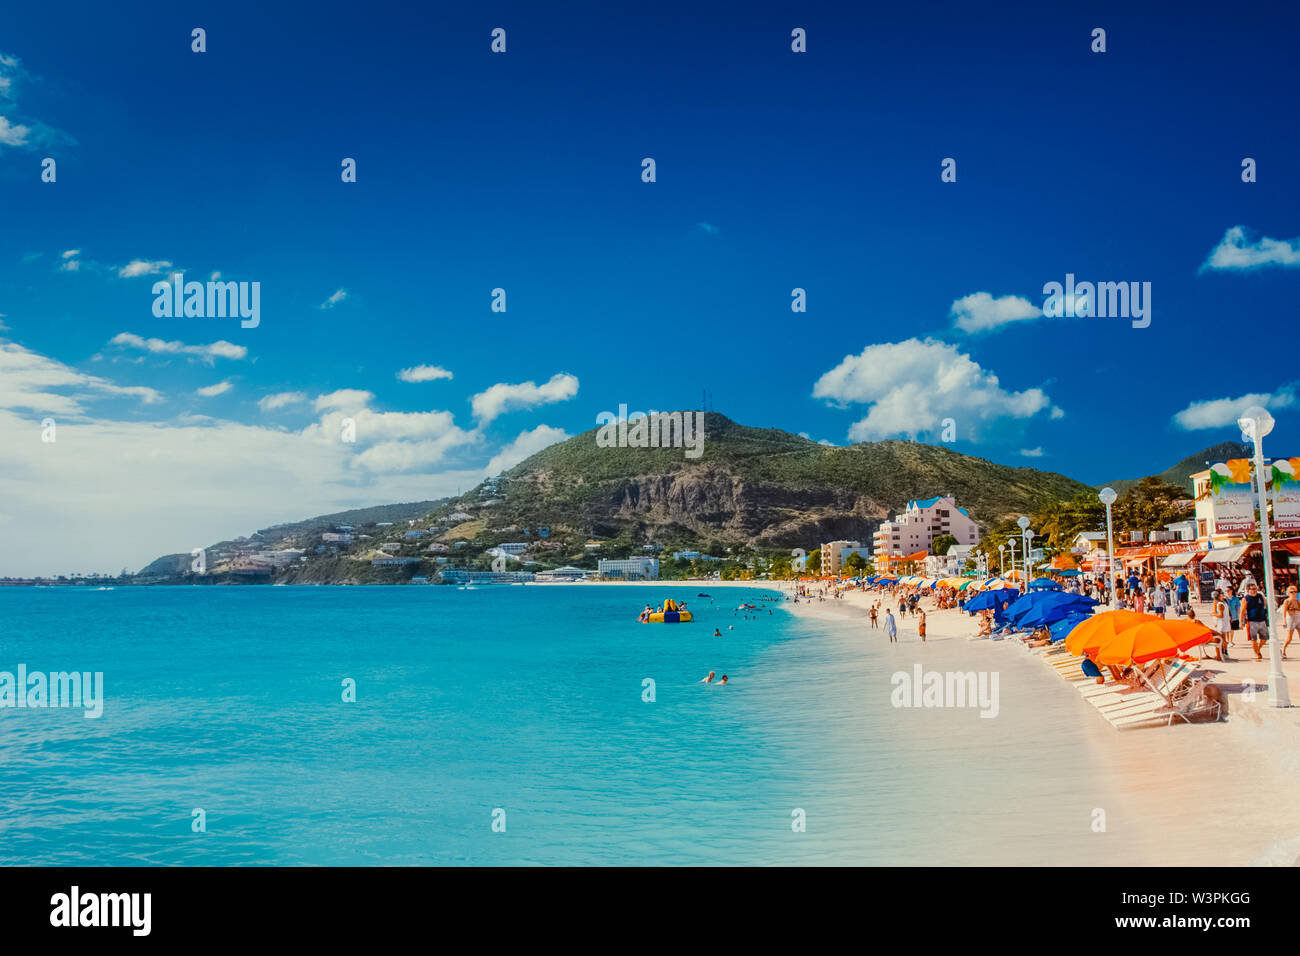 Sint Maarten/Karibik/Niederlande - Januar 23.2008: Sommer Blick auf den Sandstrand mit Menschen ruhen und schwimmen im türkisblauen Farbe Meer. Stockfoto